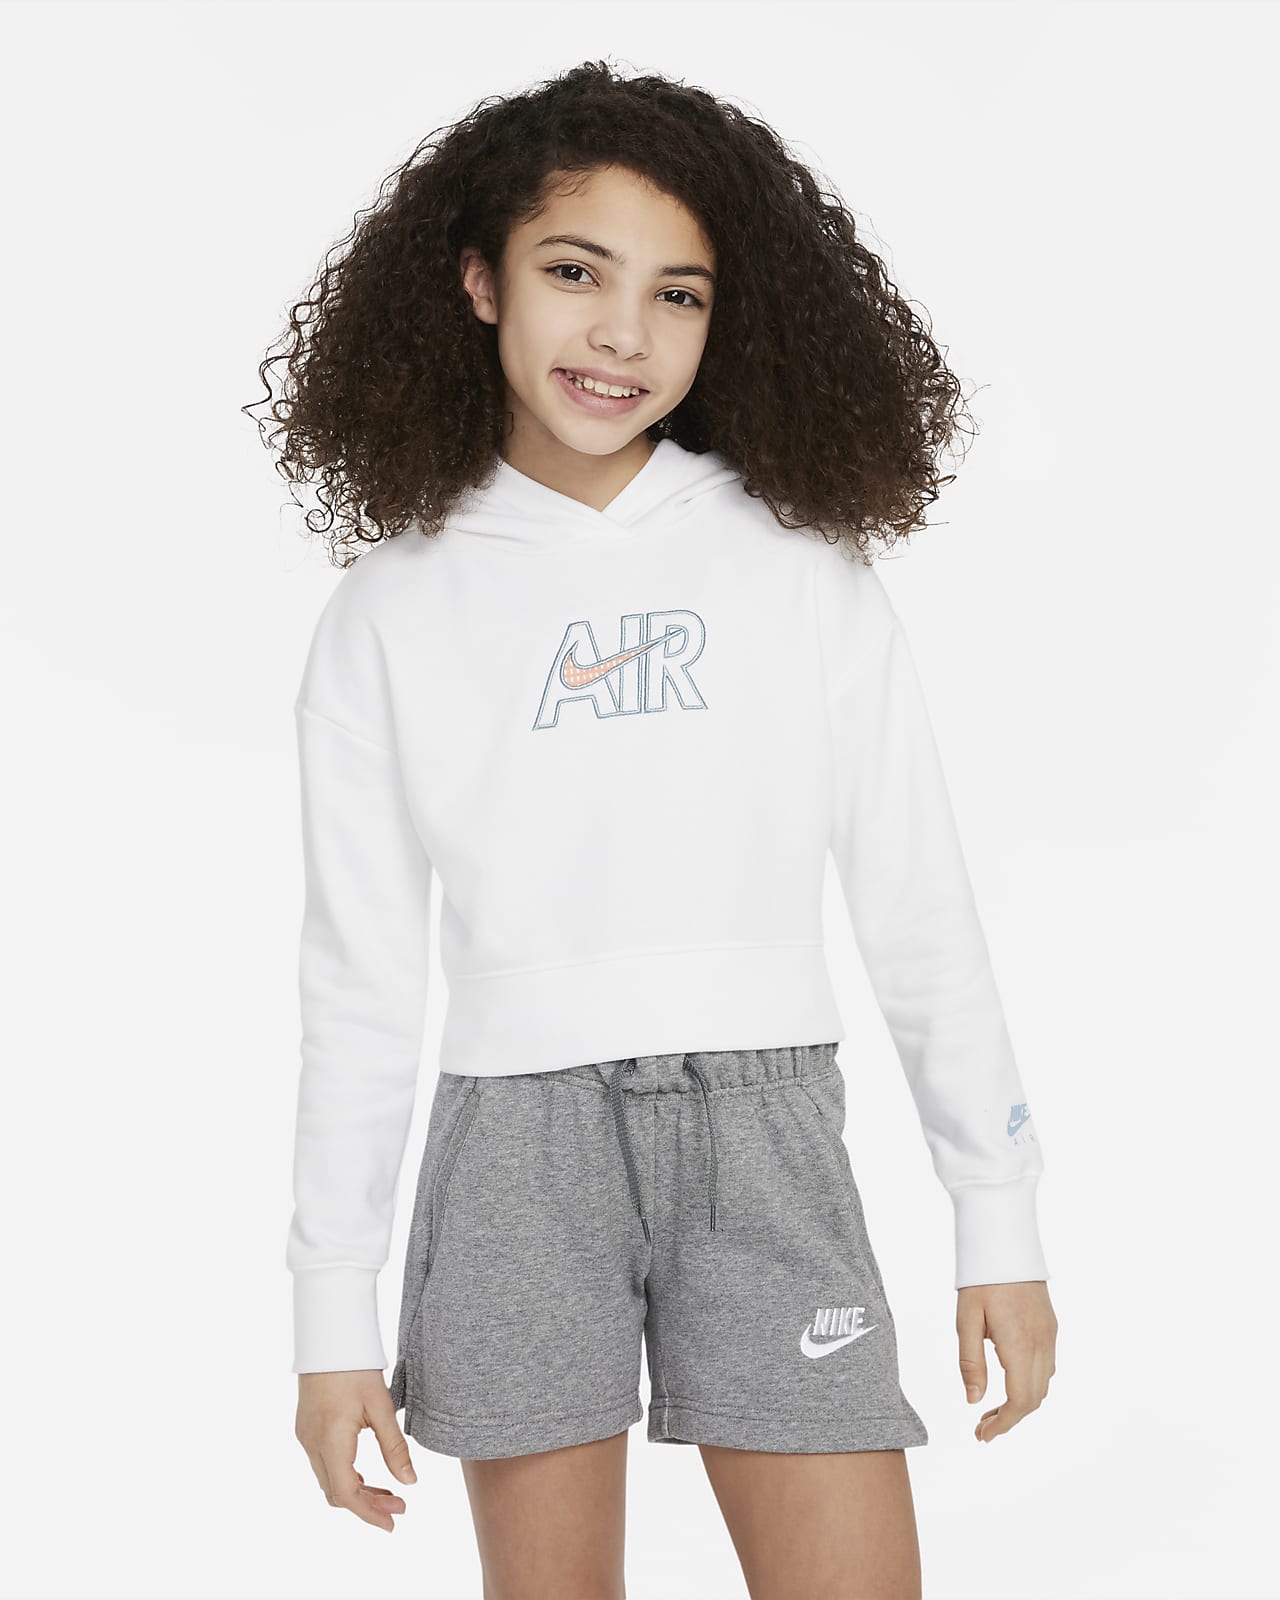 เสื้อมีฮู้ดเอวลอยผ้าเฟรนช์เทรีเด็กโต Nike Air (หญิง)